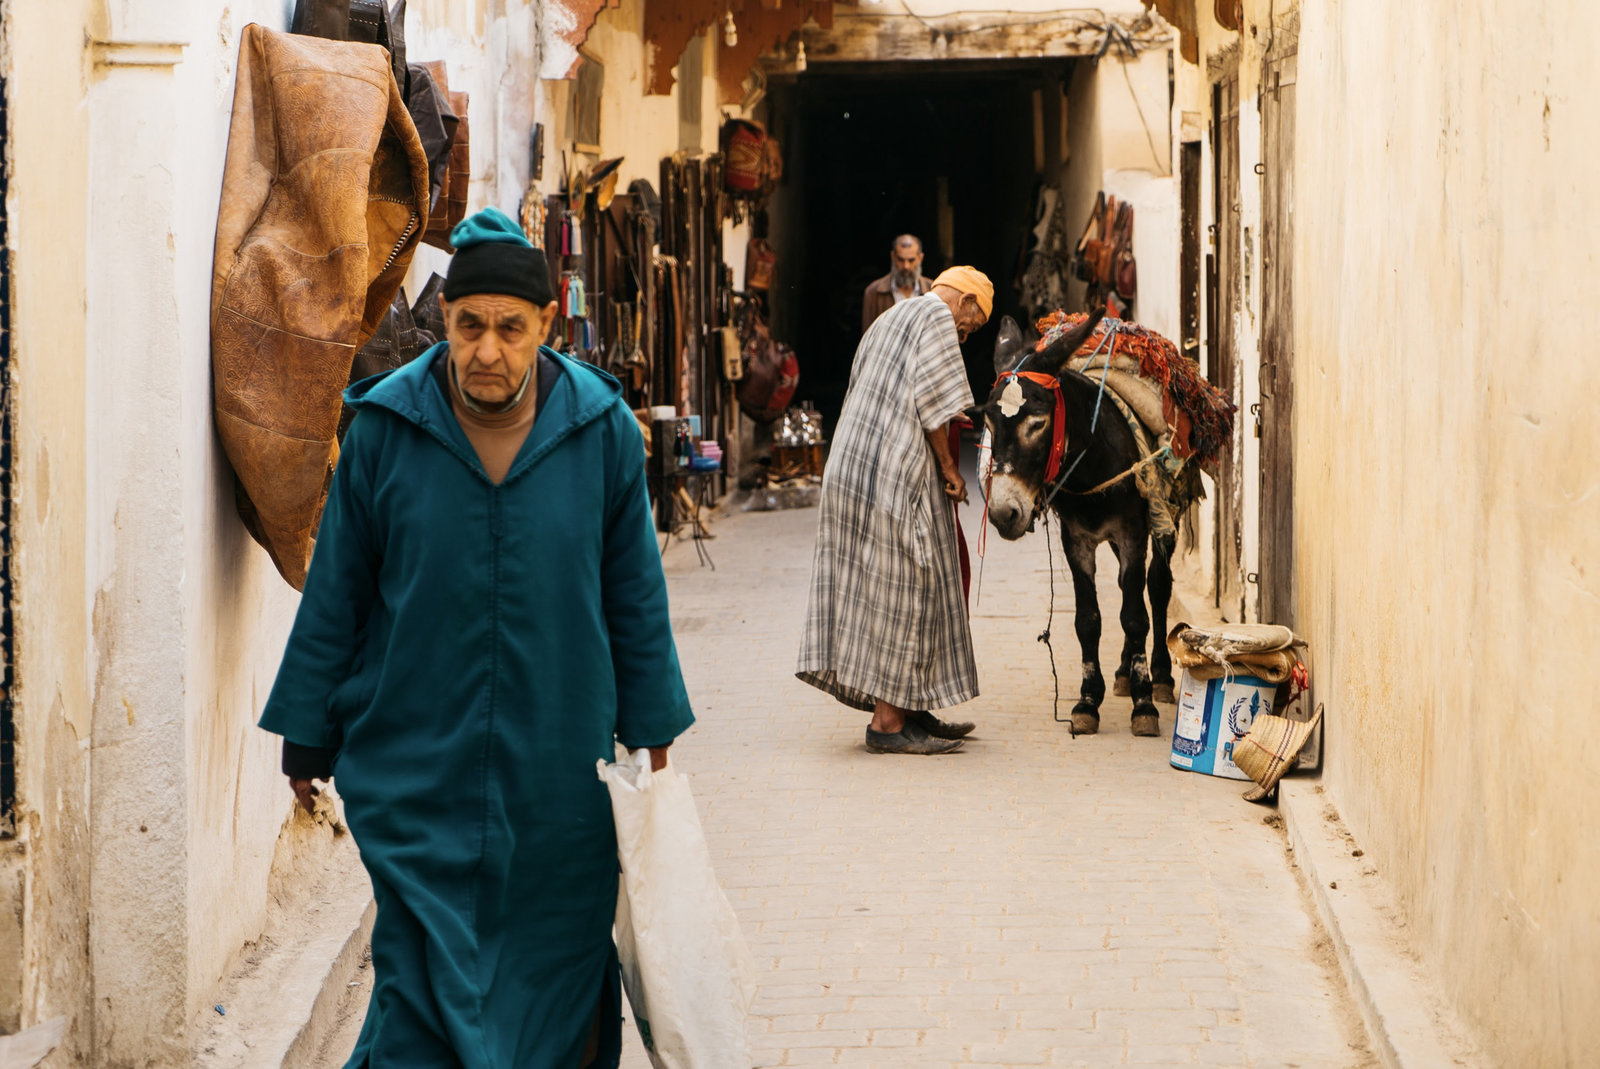 Sasha_Reiko_Photography_Travel_Morocco-123